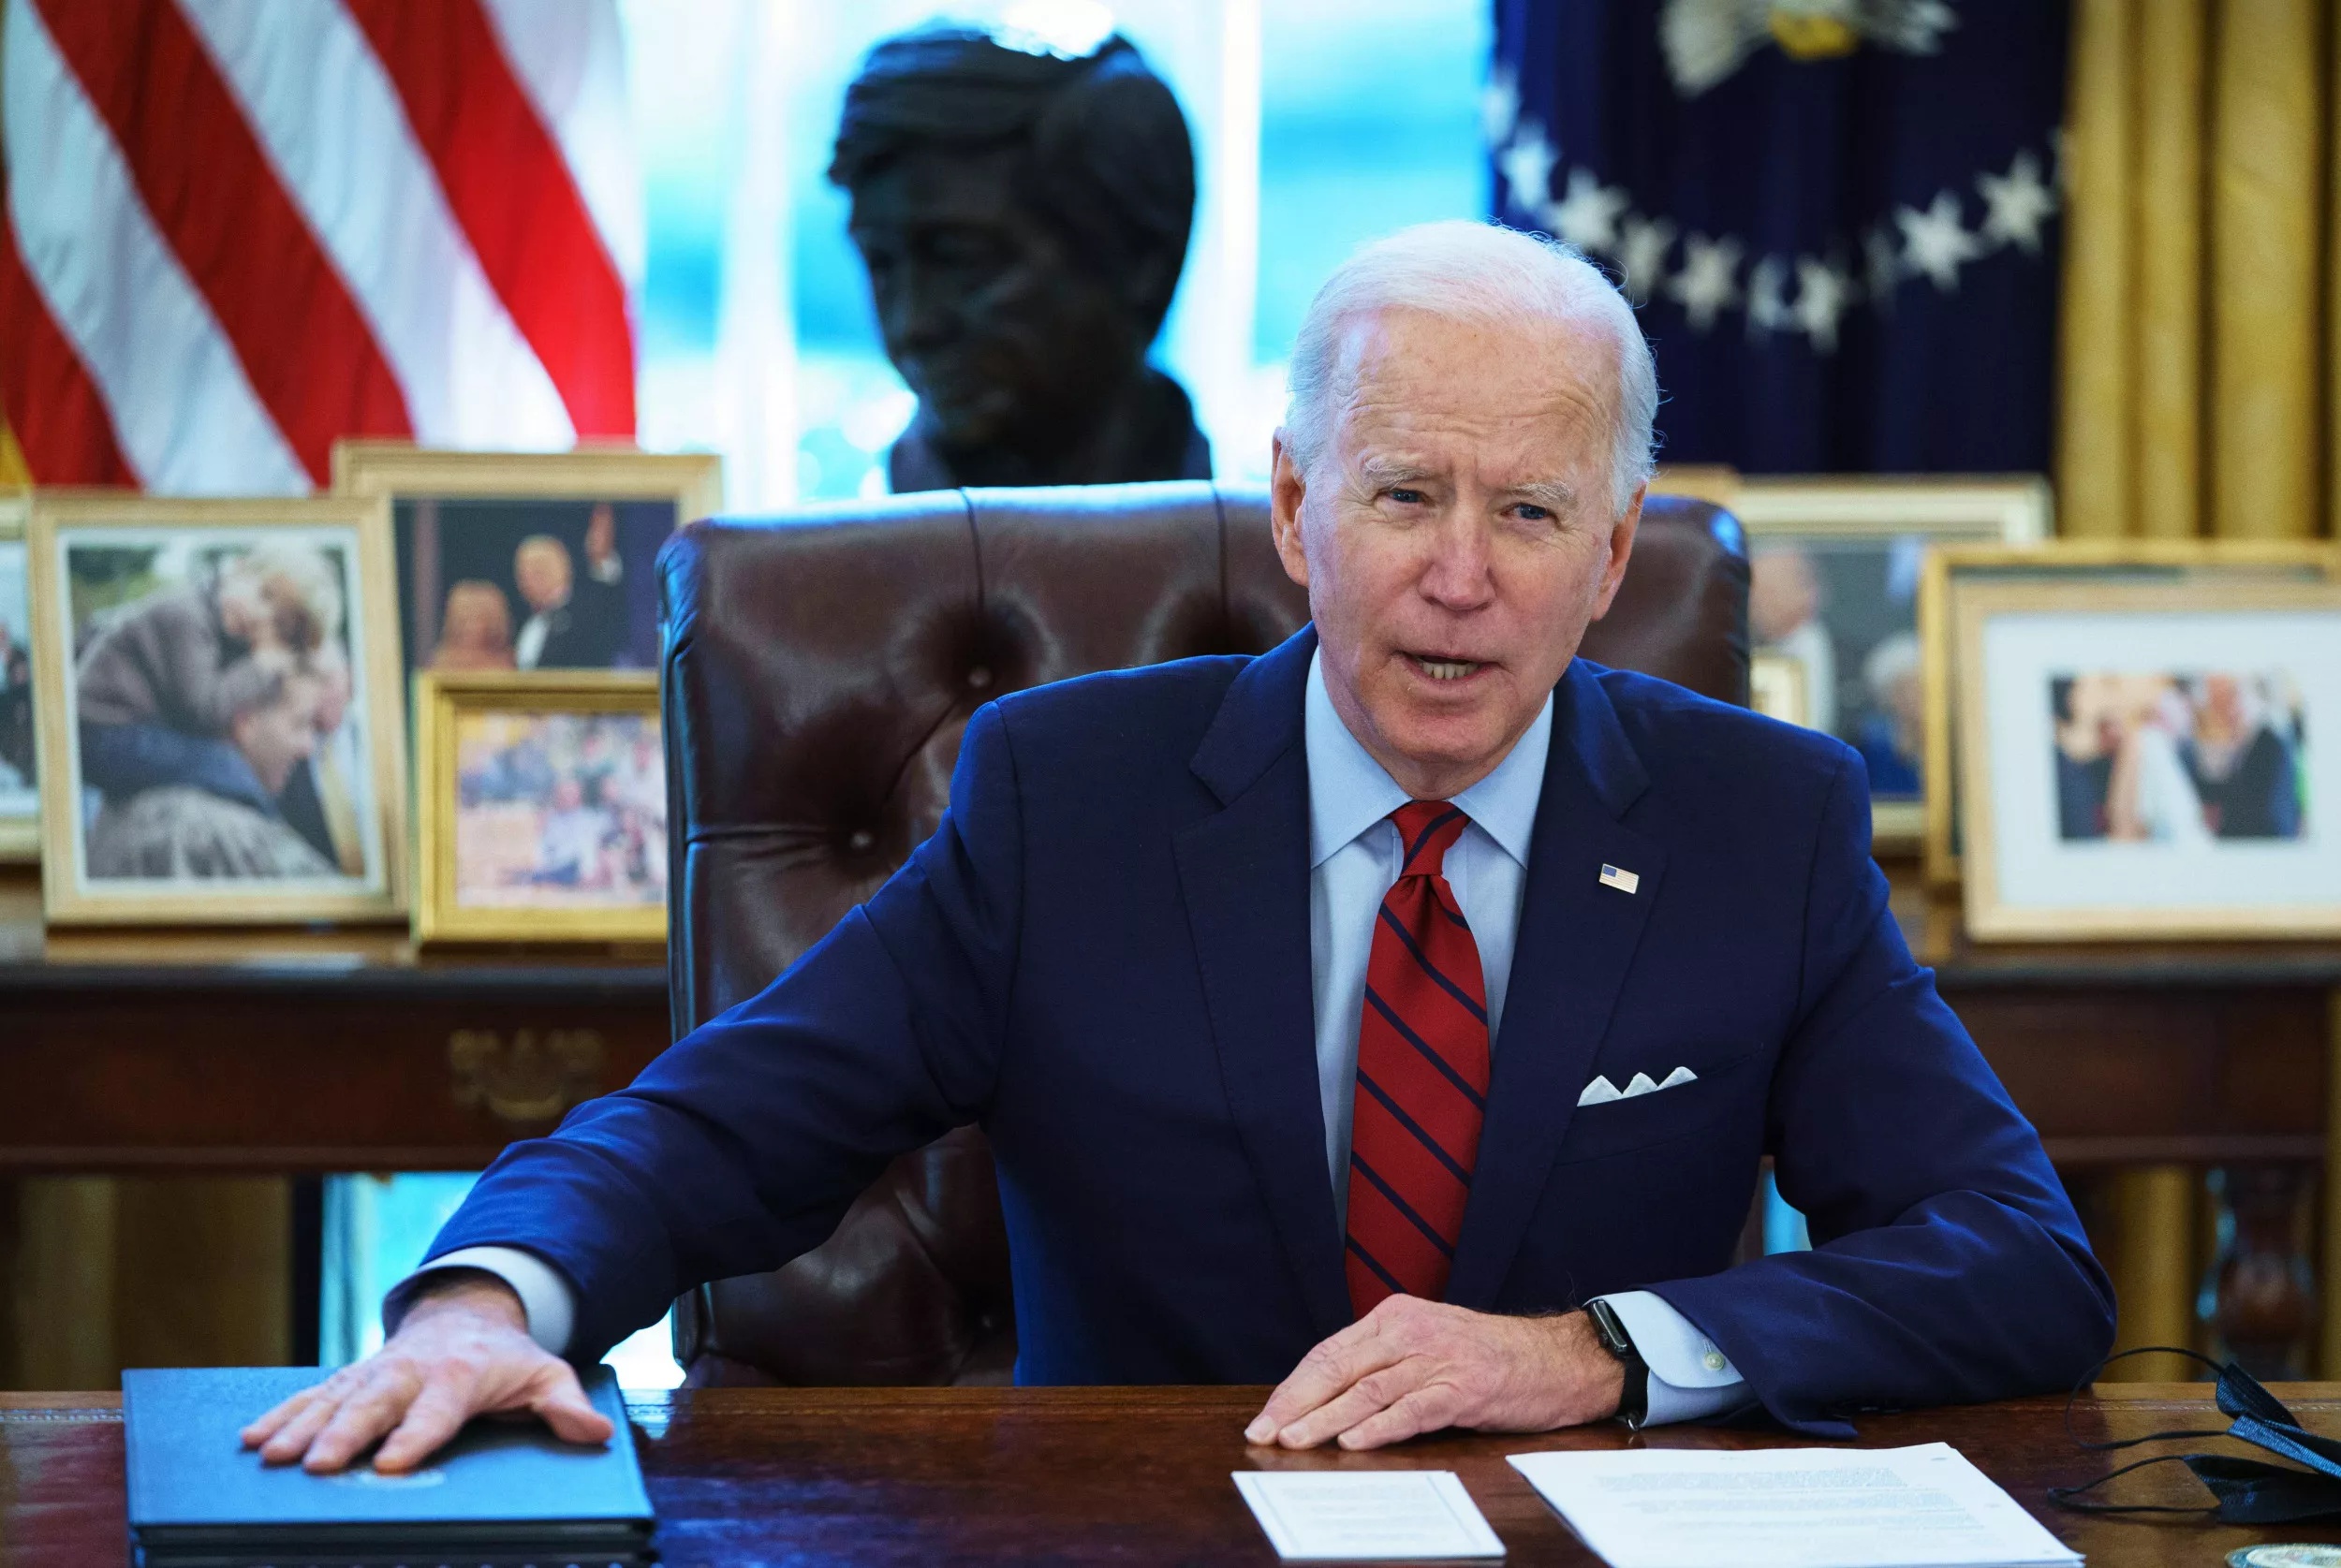 Fact Check: Can Joe Biden Eliminate All Healthcare Debt By Executive Order?